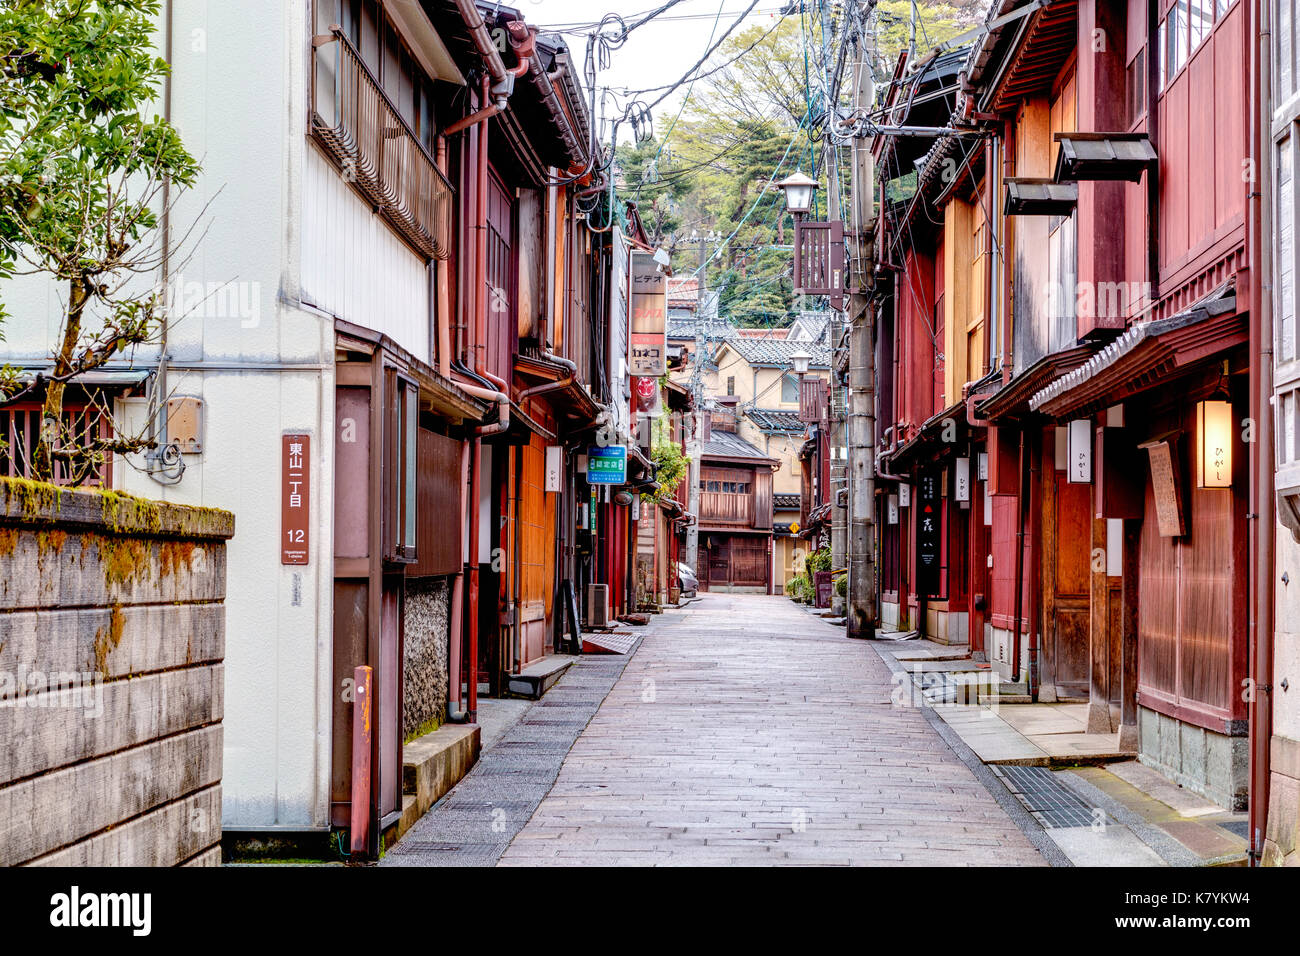 Higashi Chaya beliebten touristischen Bezirk von Kanazawa, Japan. Blick auf typische Edo periode Gasse mit hölzernen Gebäuden auf beiden Seiten. Stockfoto